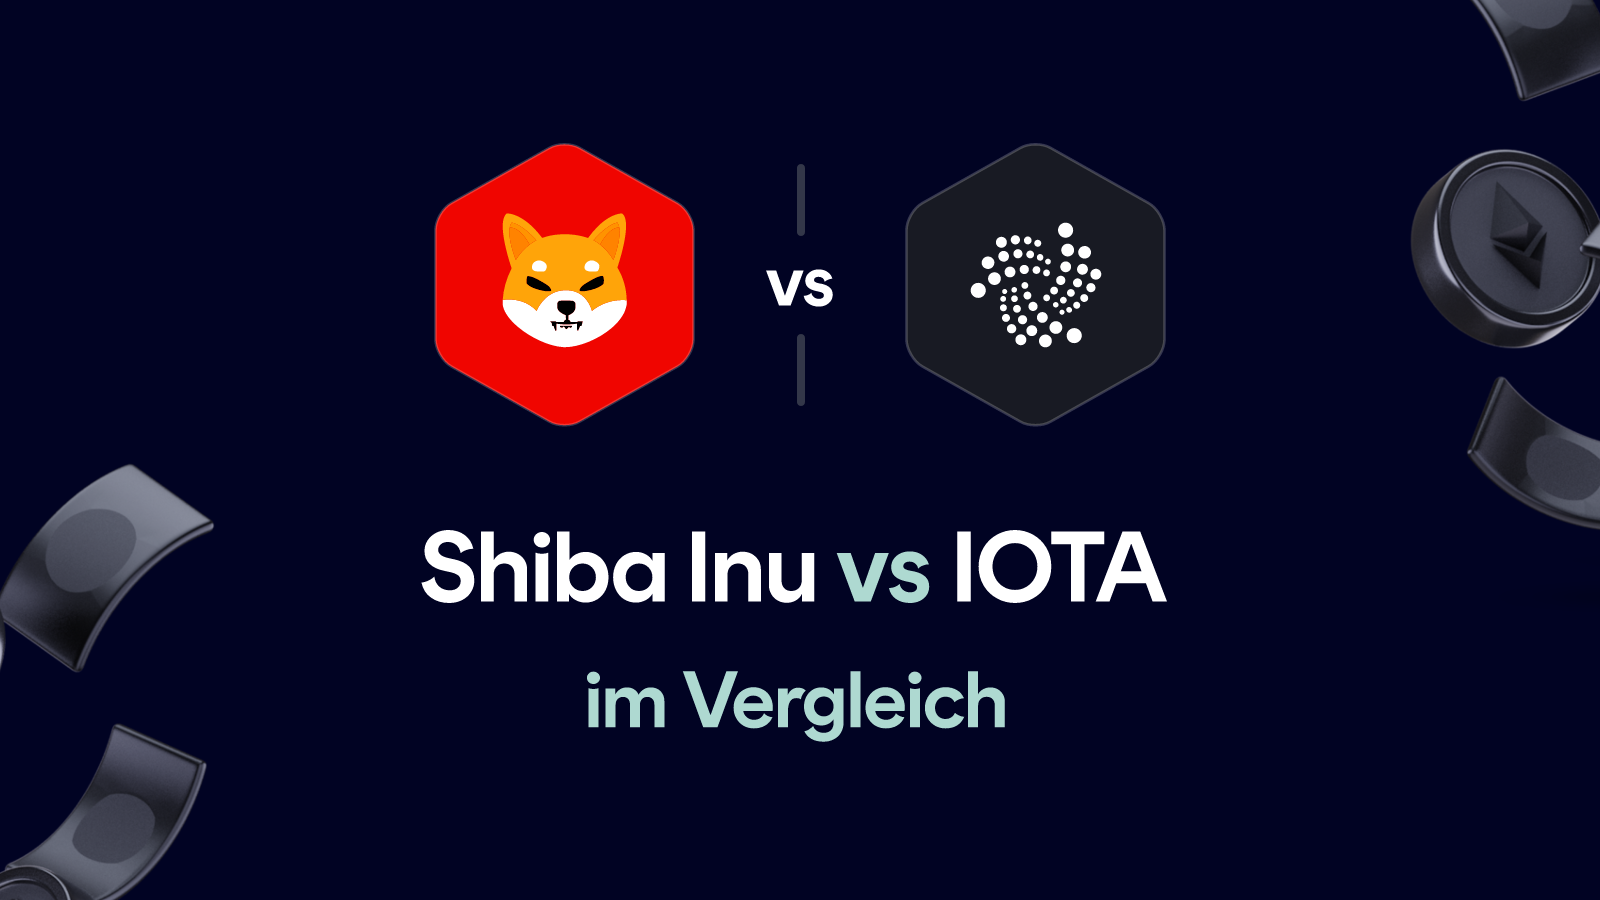 Shiba Inu vs IOTA